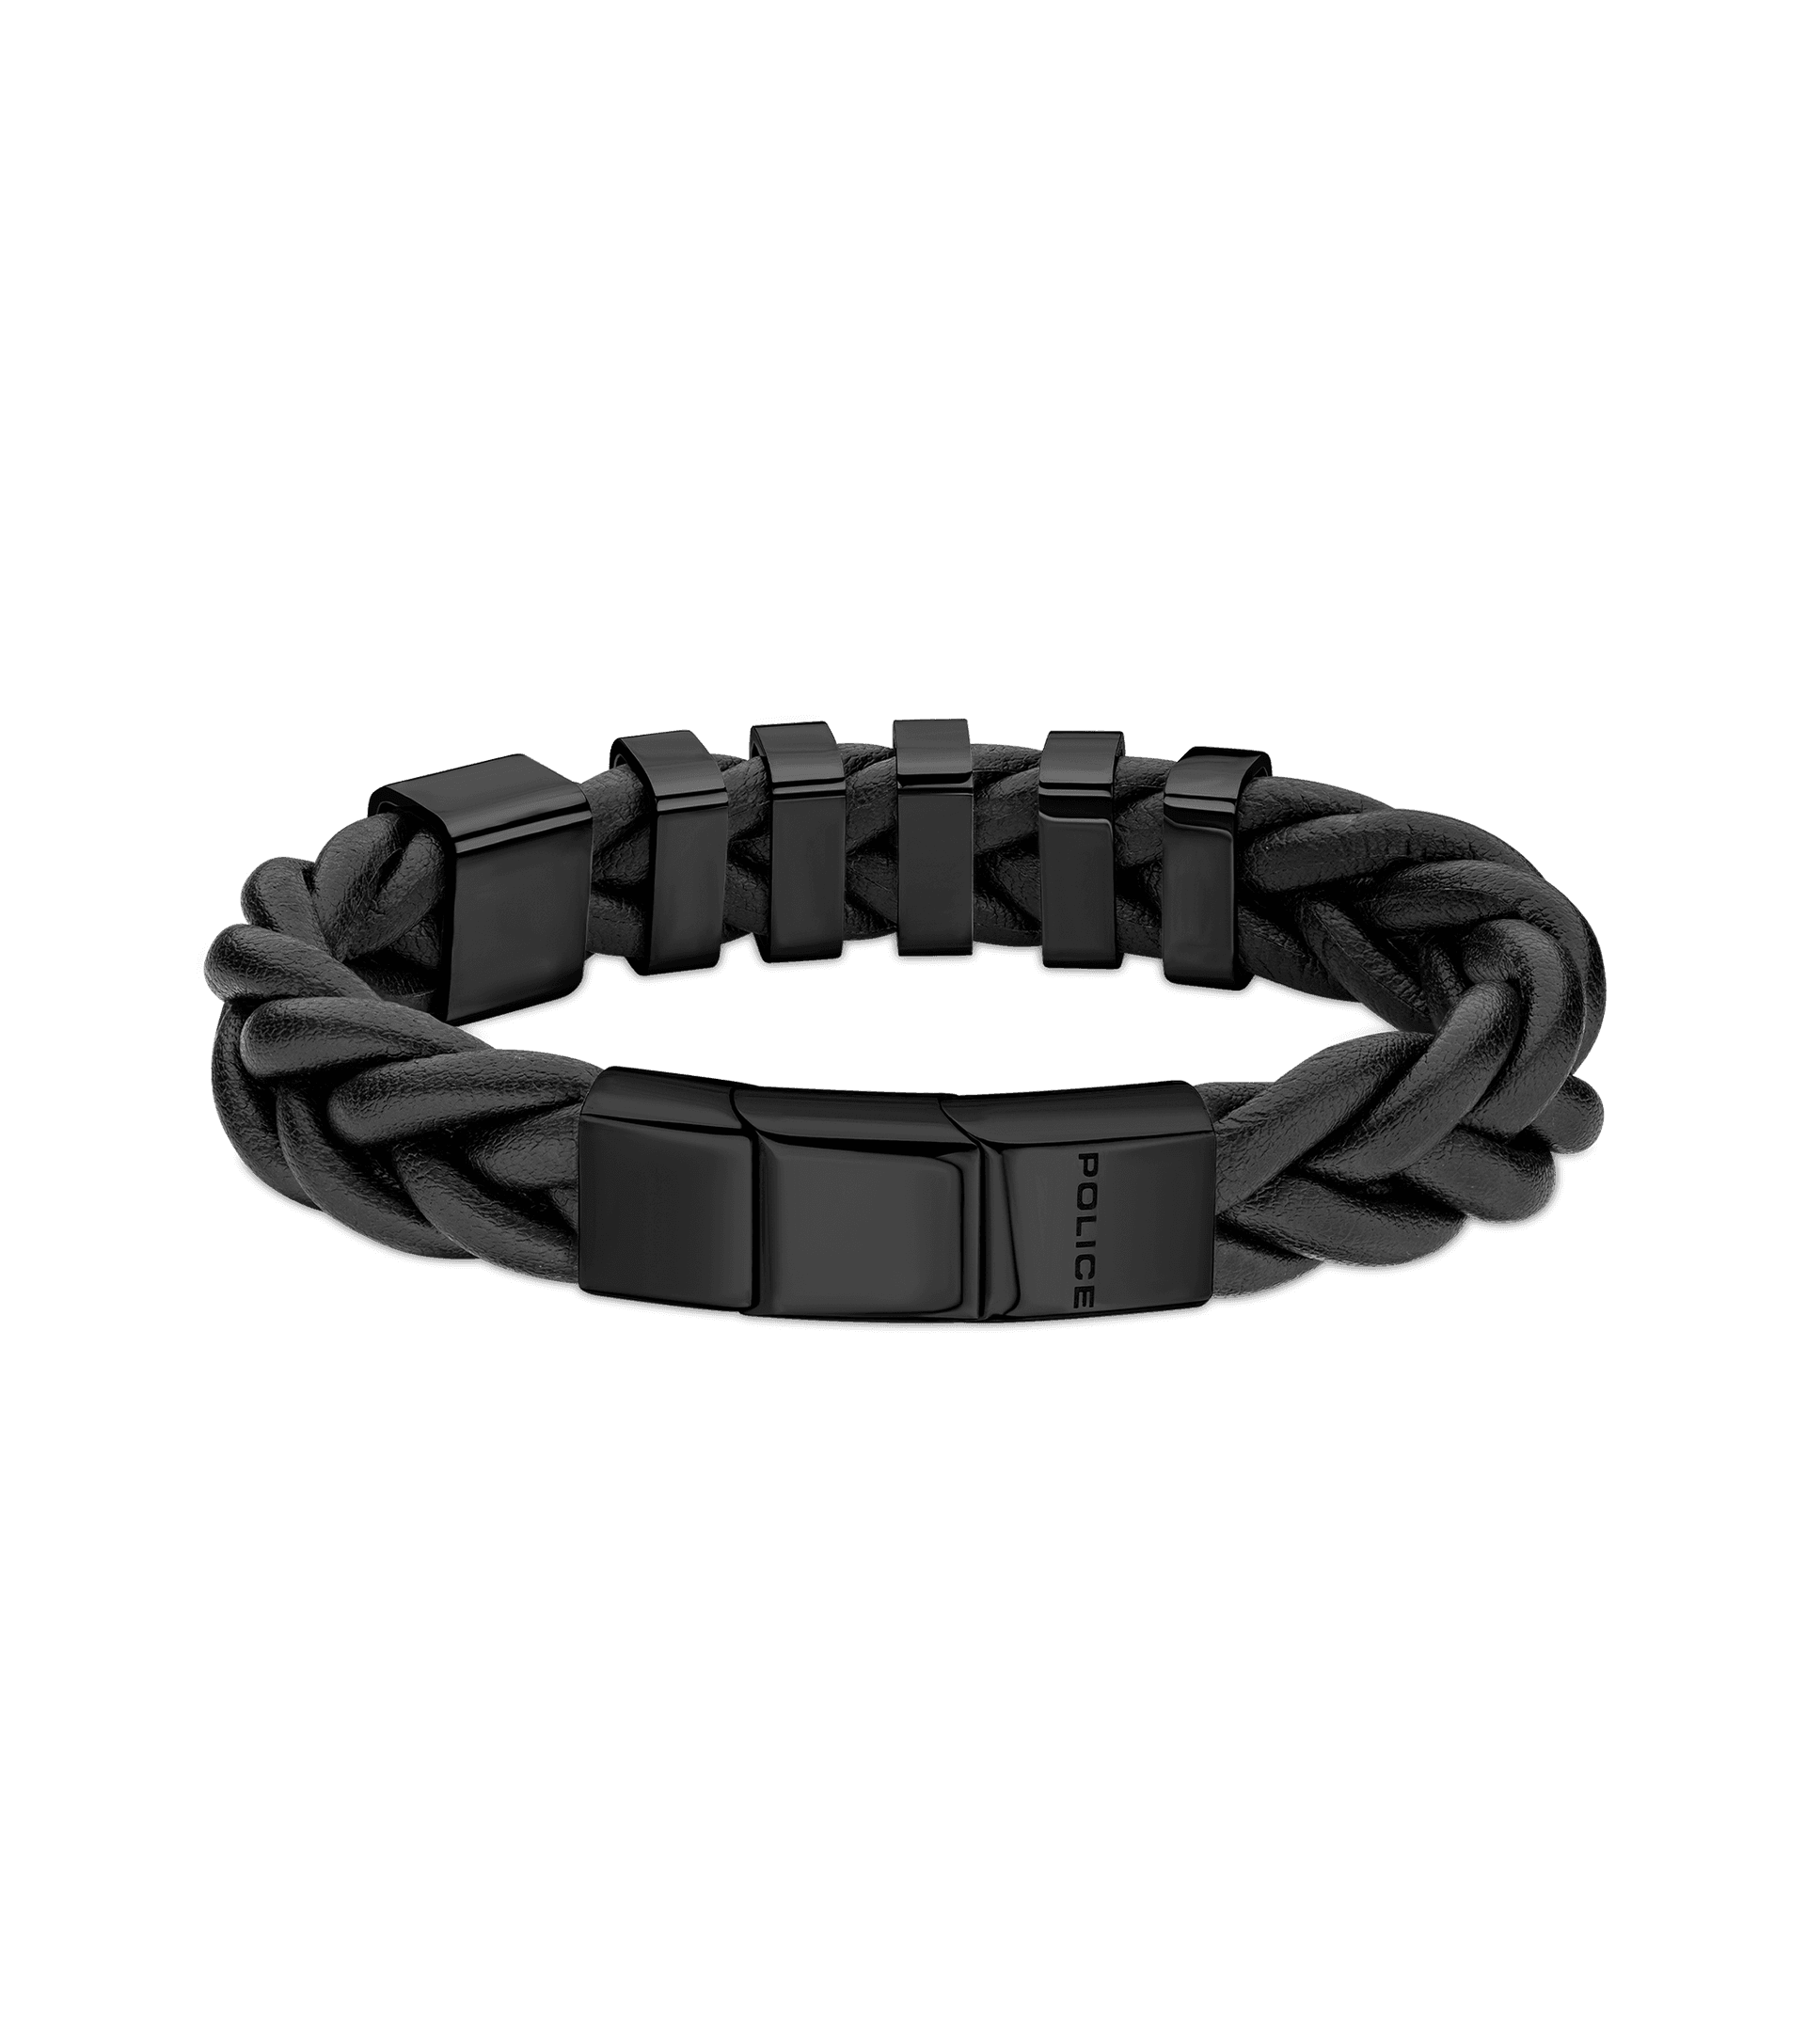 Police Men's Hardware Leather Bracelet PEAGB2214923